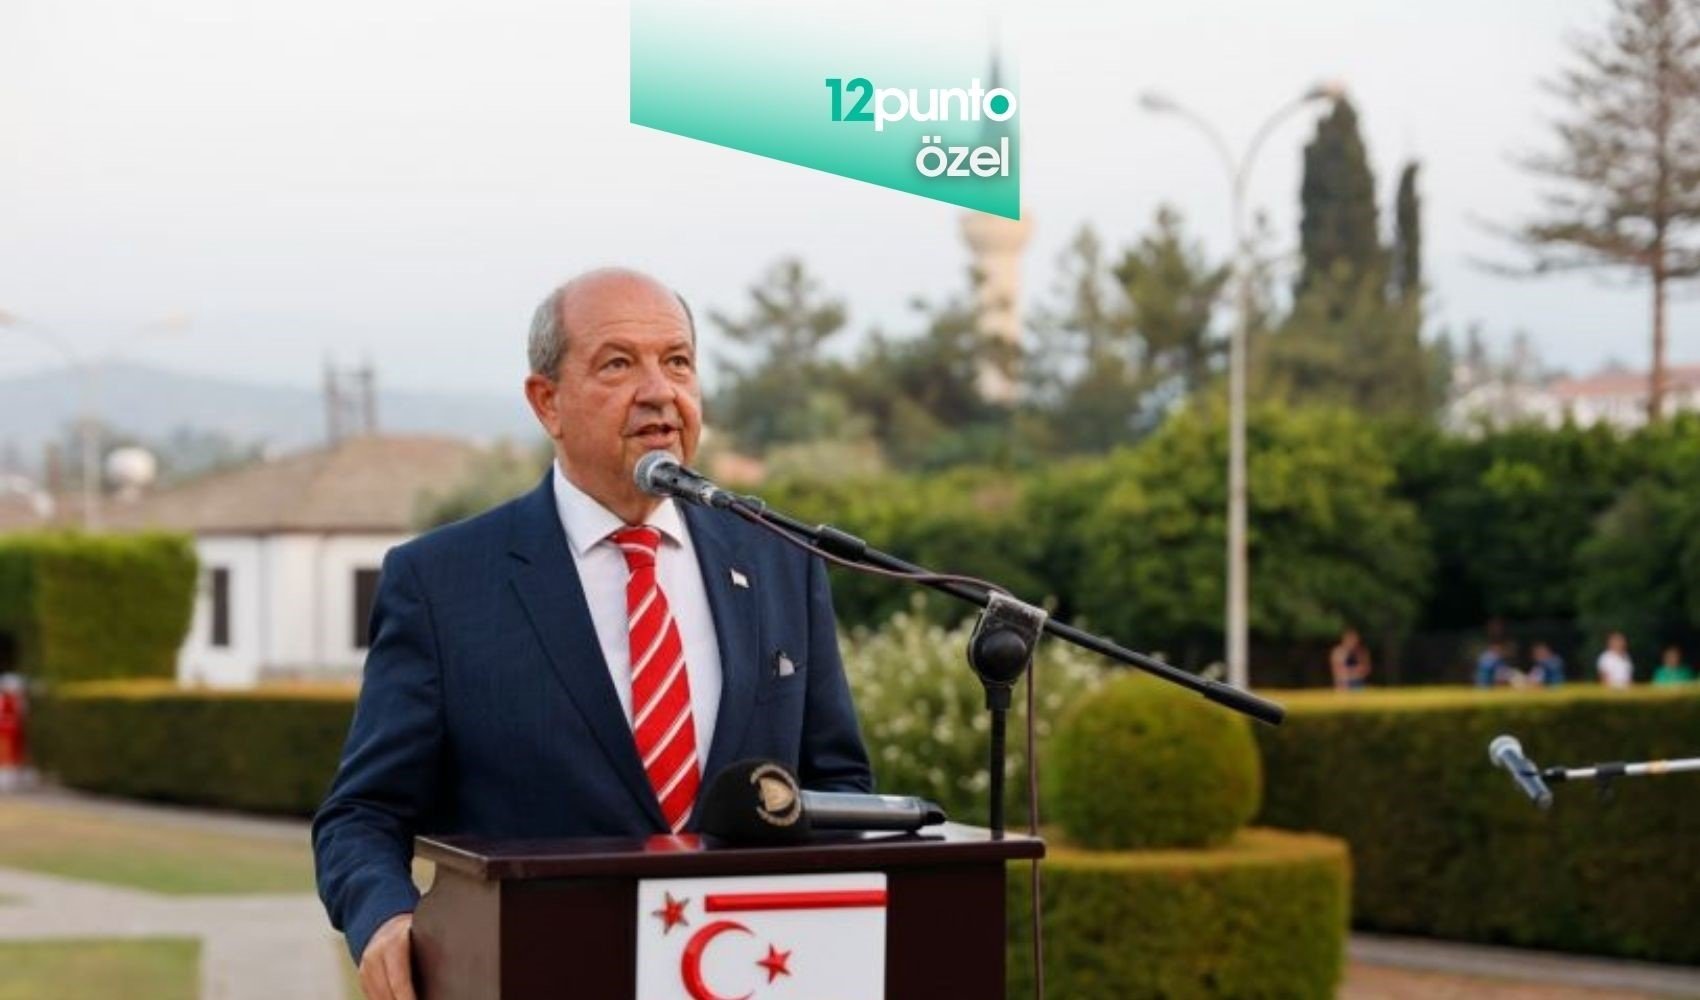 KKTC Cumhurbaşkanı Ersin Tatar 12punto’ya konuştu: ‘Federasyon tuzağına düşülmemeli’